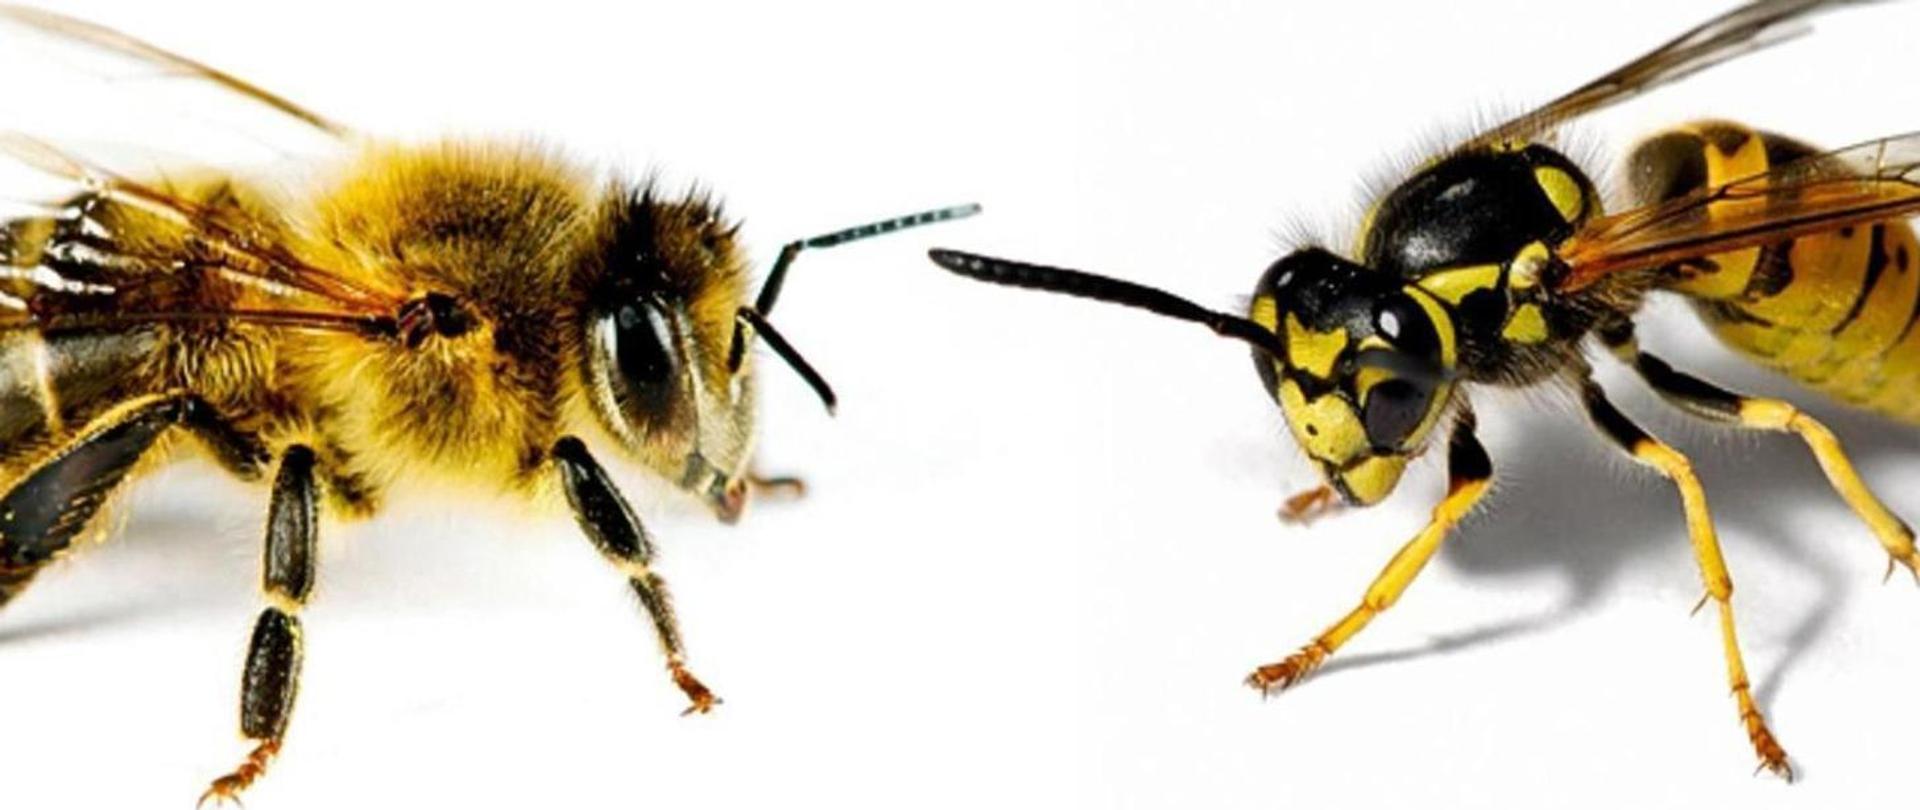 Grafika, zdjęcie przedstawiające do siebie przodami skierowane dwa owady błonkoskrzydłe na białym tle.